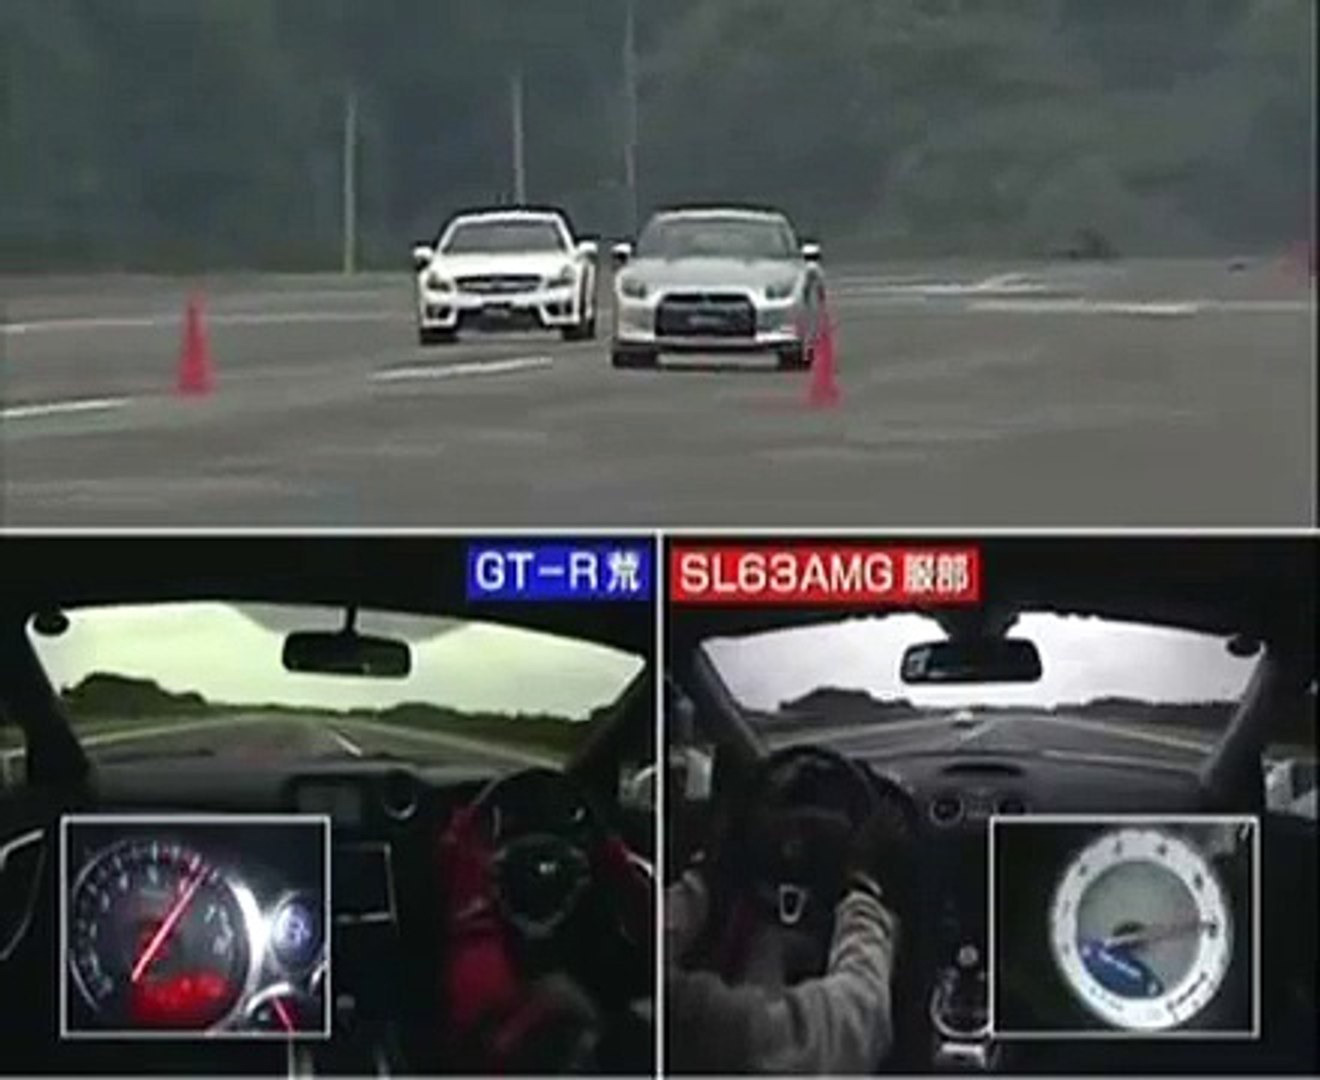 Japan cars vs Germany cars